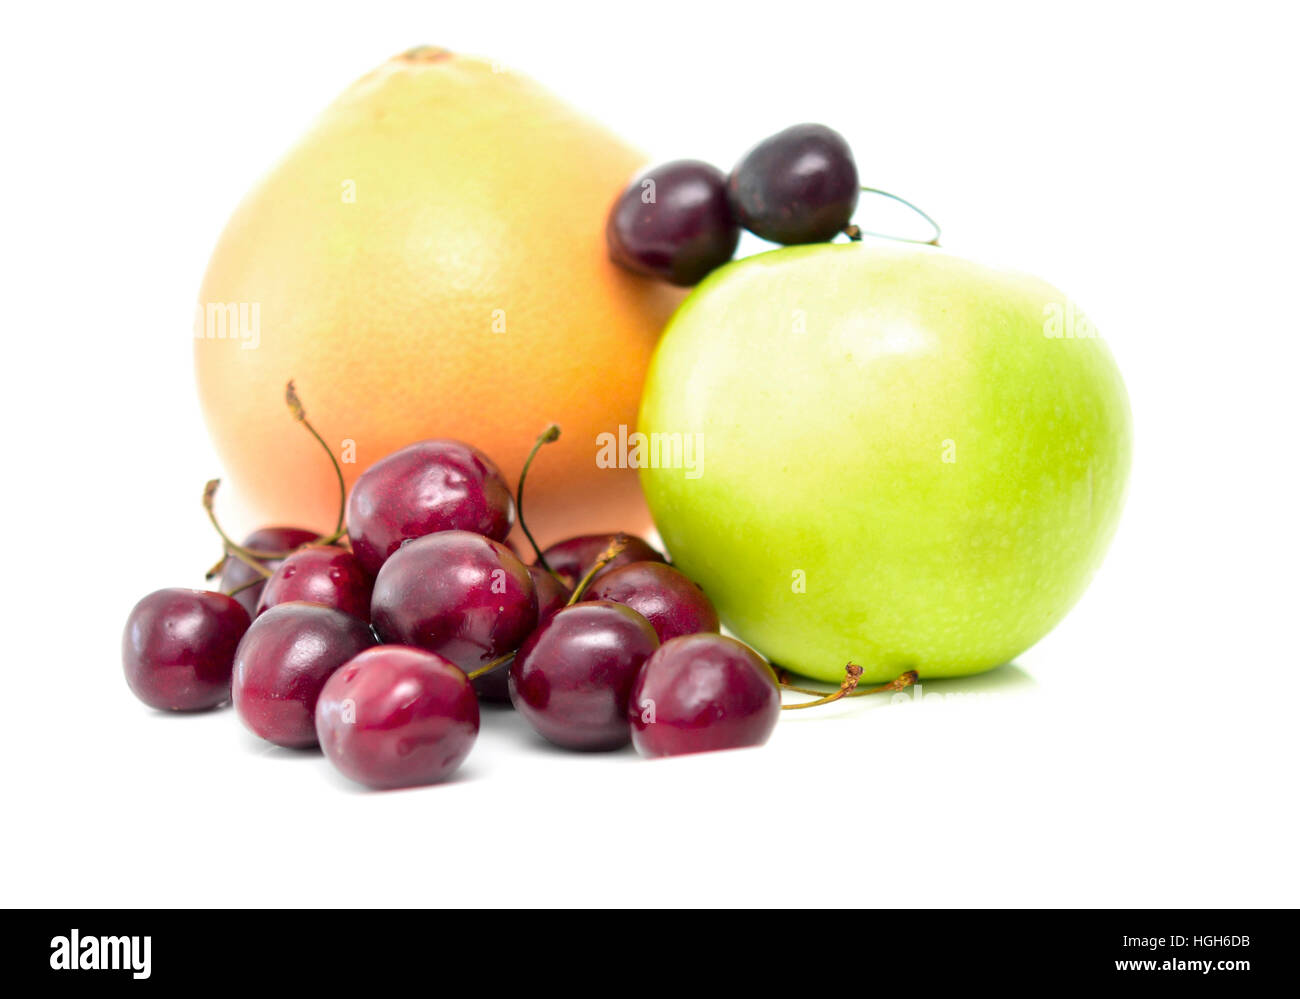 fruits isolated on white background Stock Photo